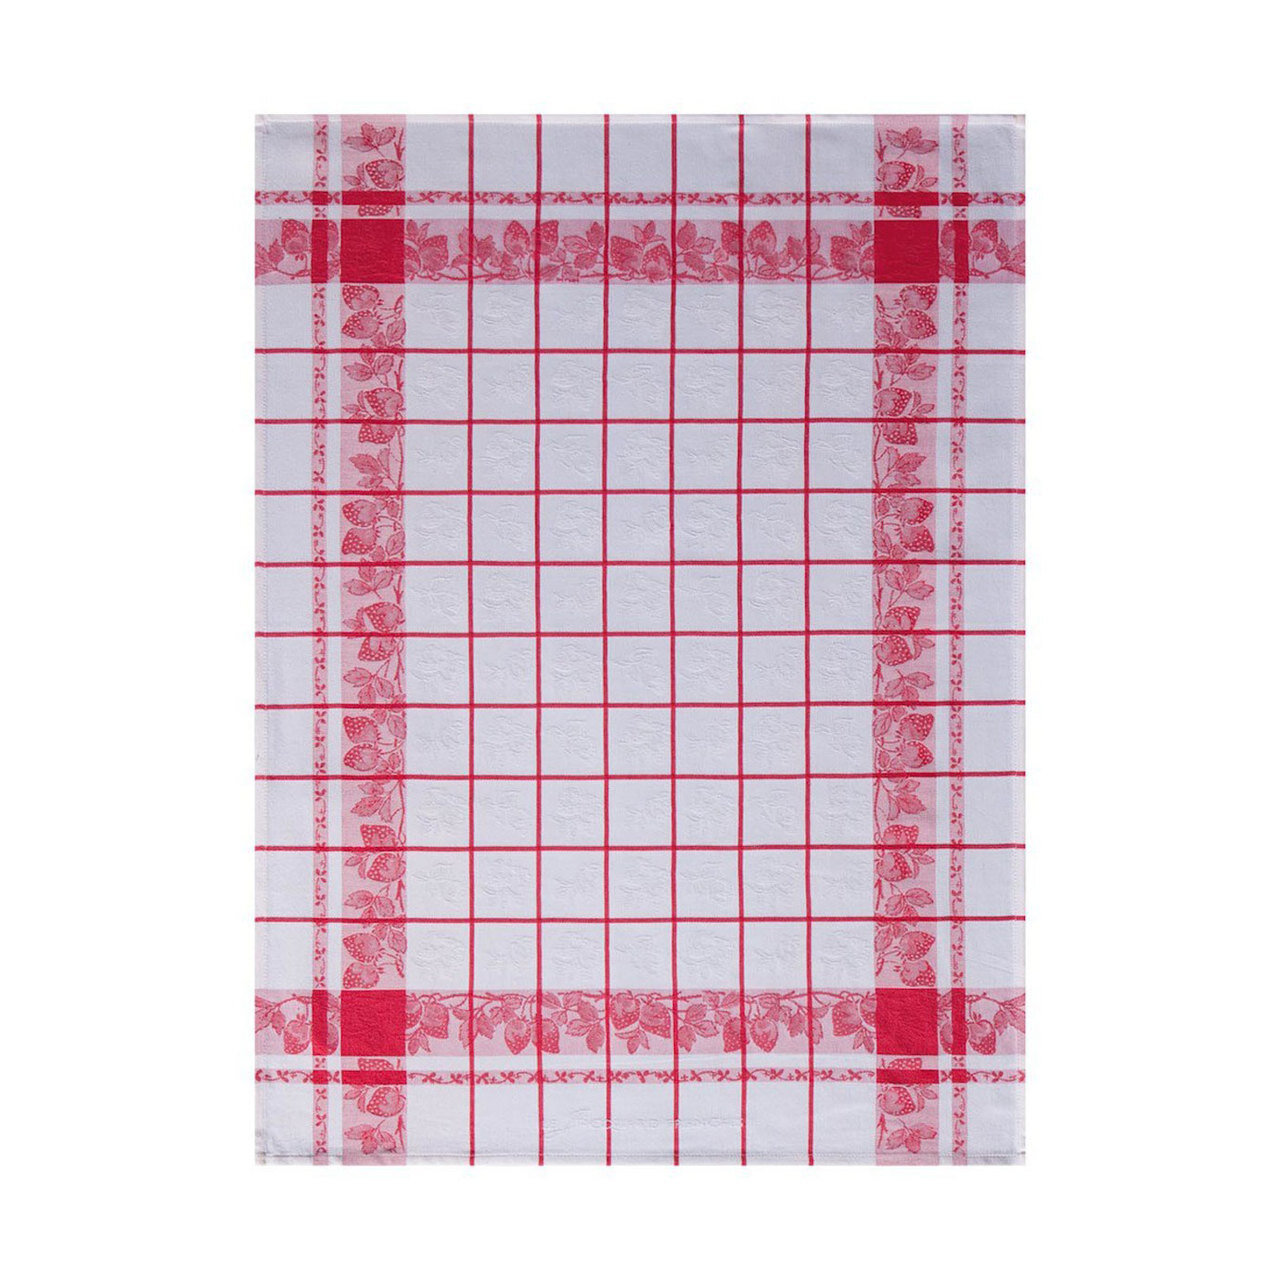 Le Jacquard Francais Fraises Red Tea Towel 24 x 31 Set of 4